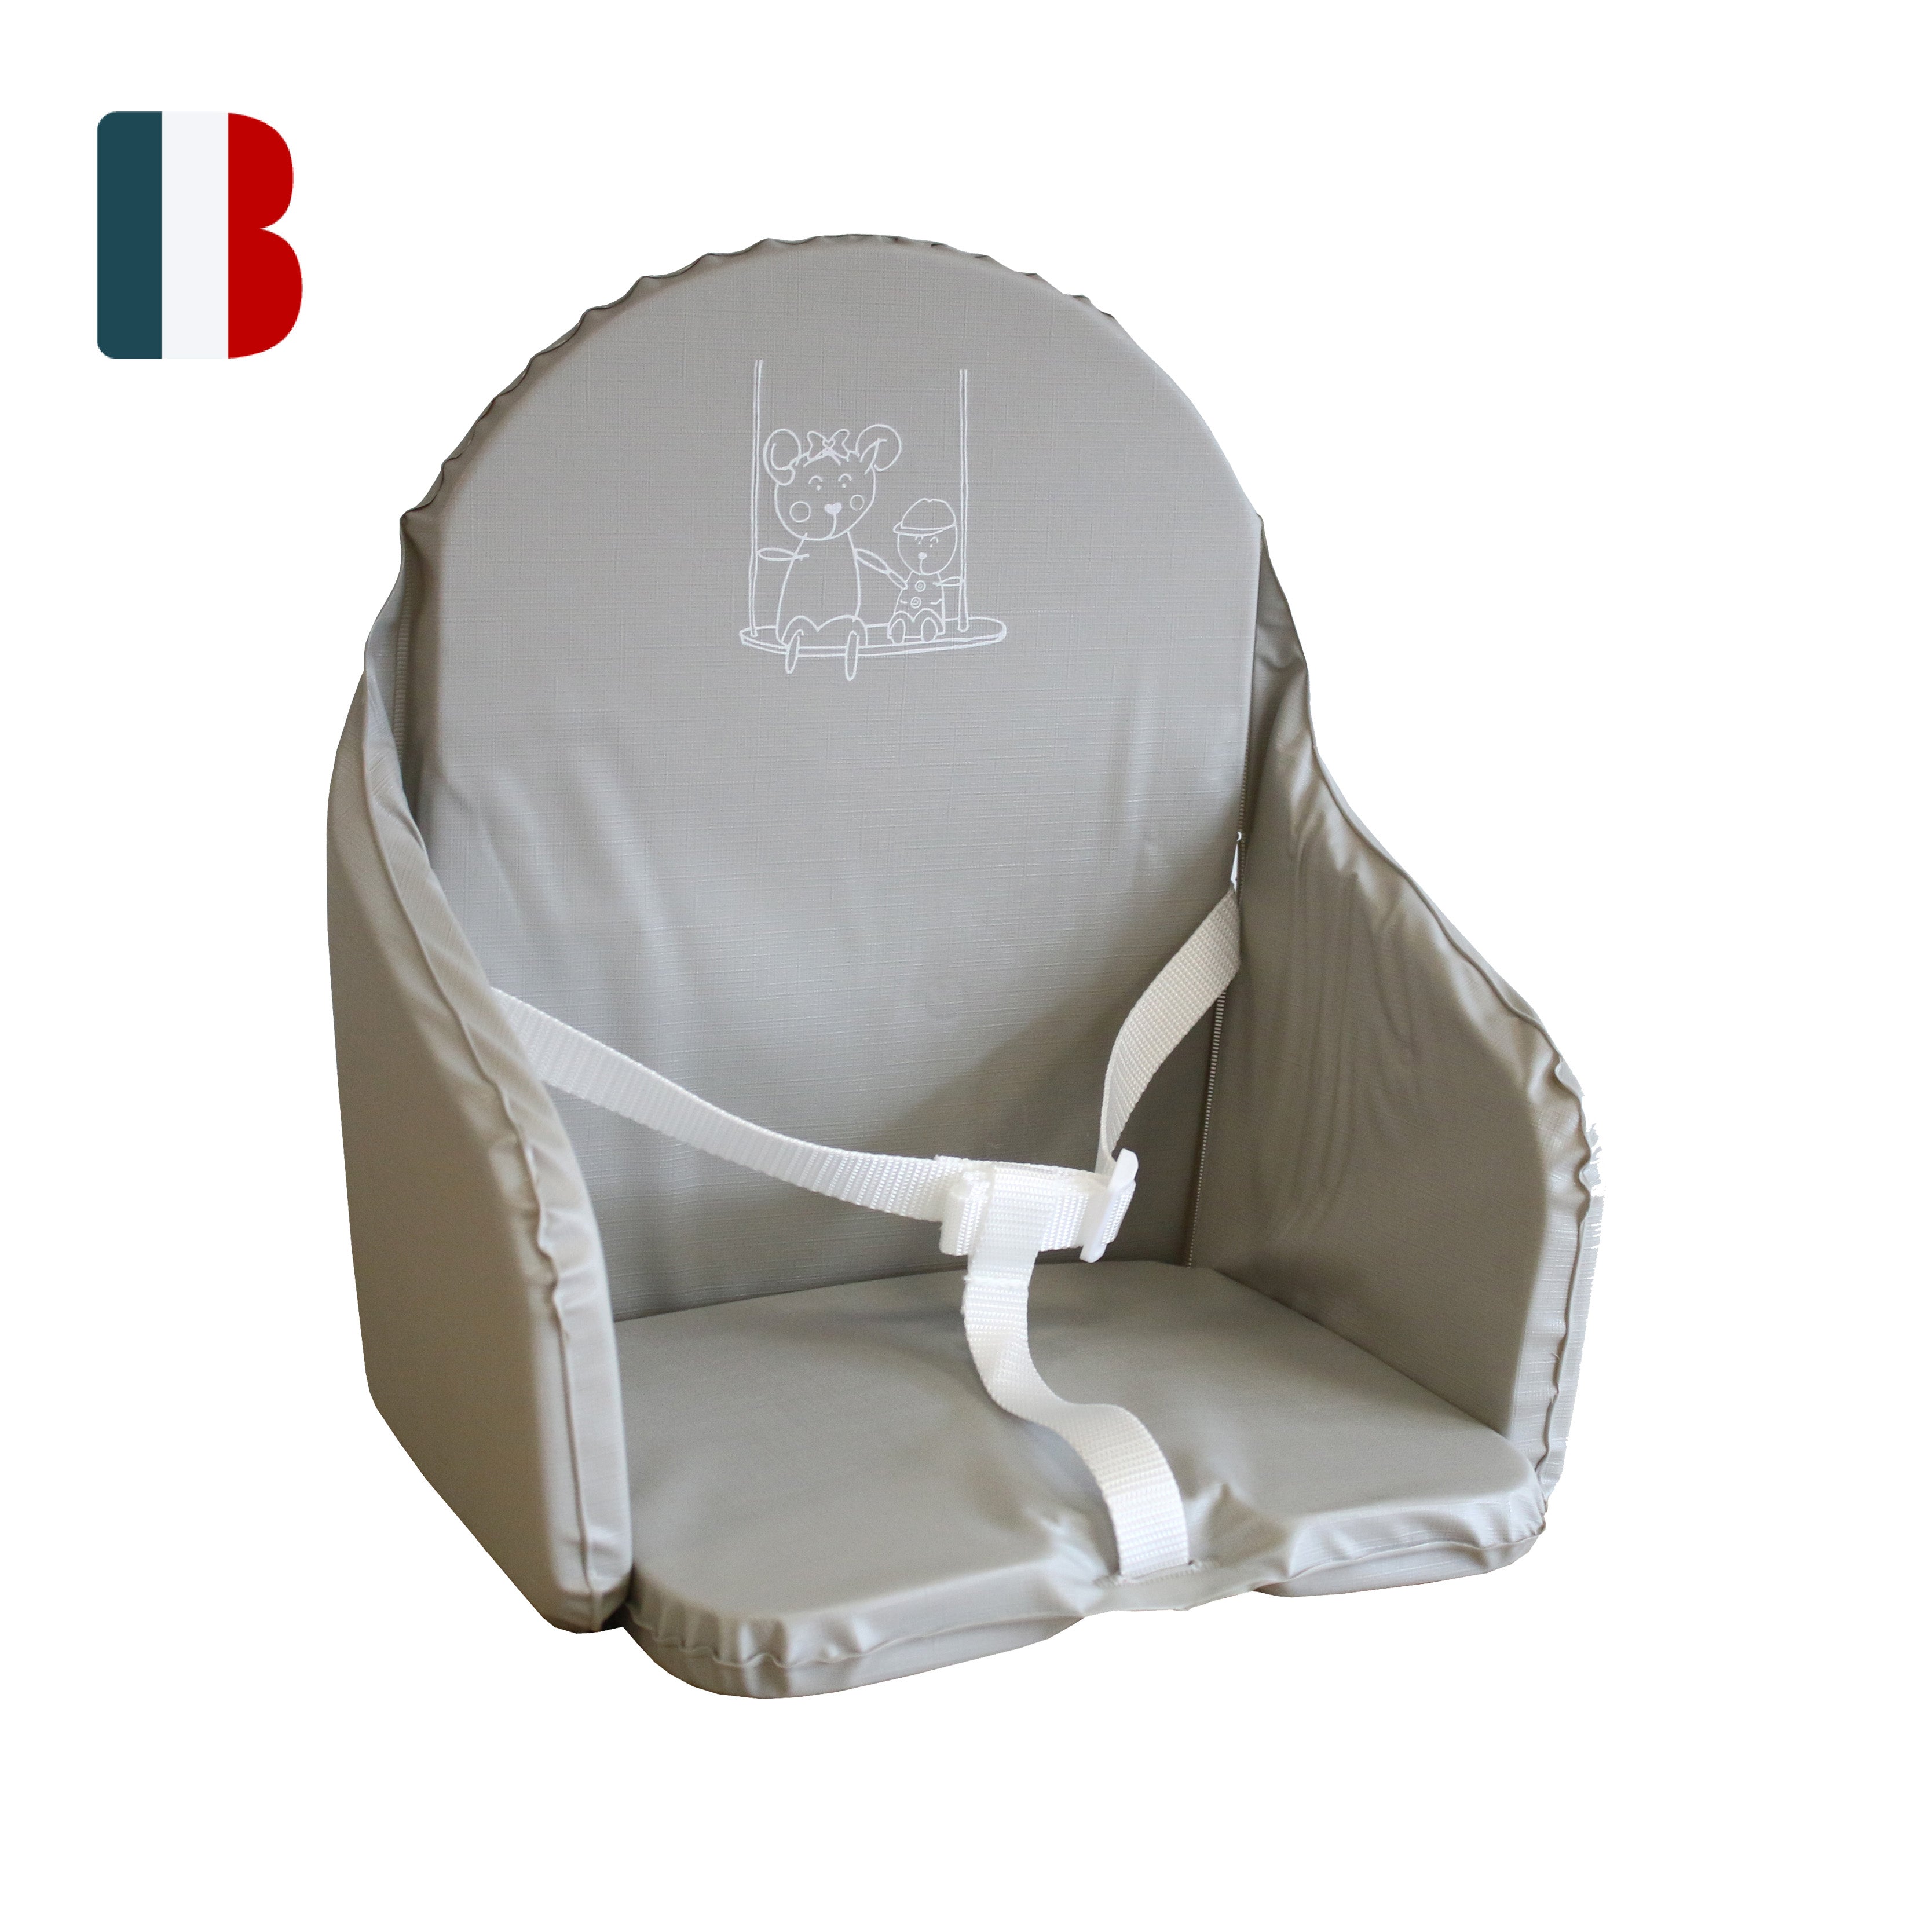 Coussin de chaise haute bébé - Les p'tites choses de Stef Any